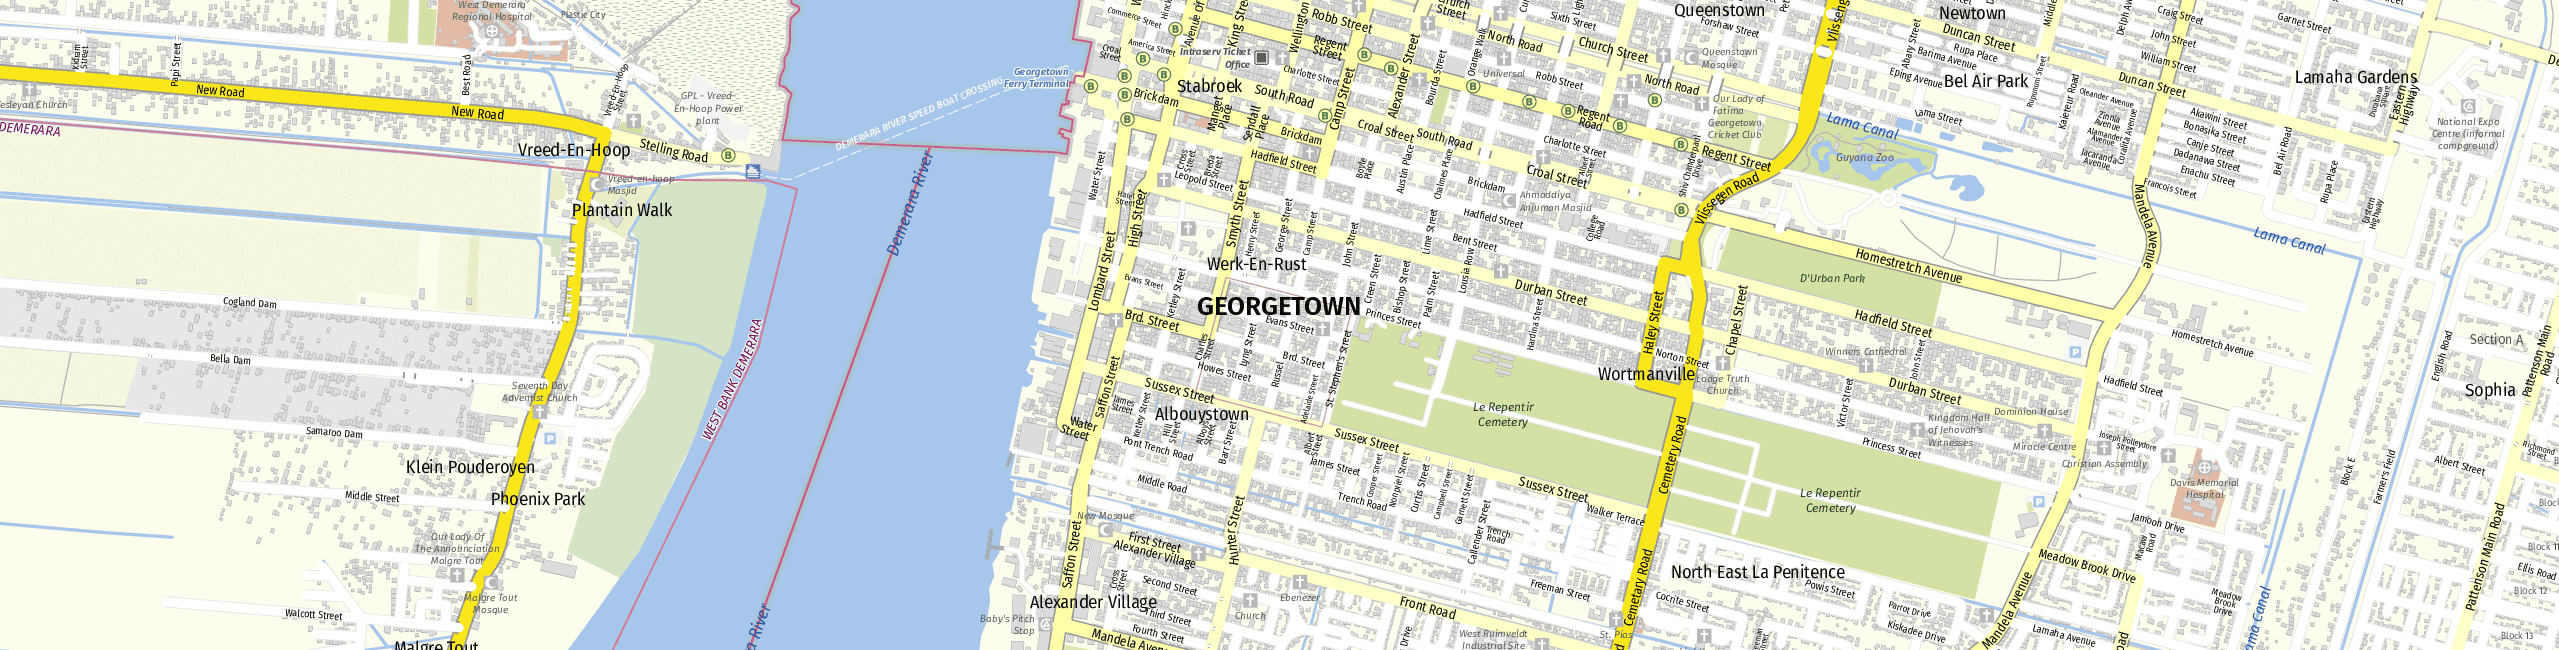 Stadtplan Georgetown zum Downloaden.